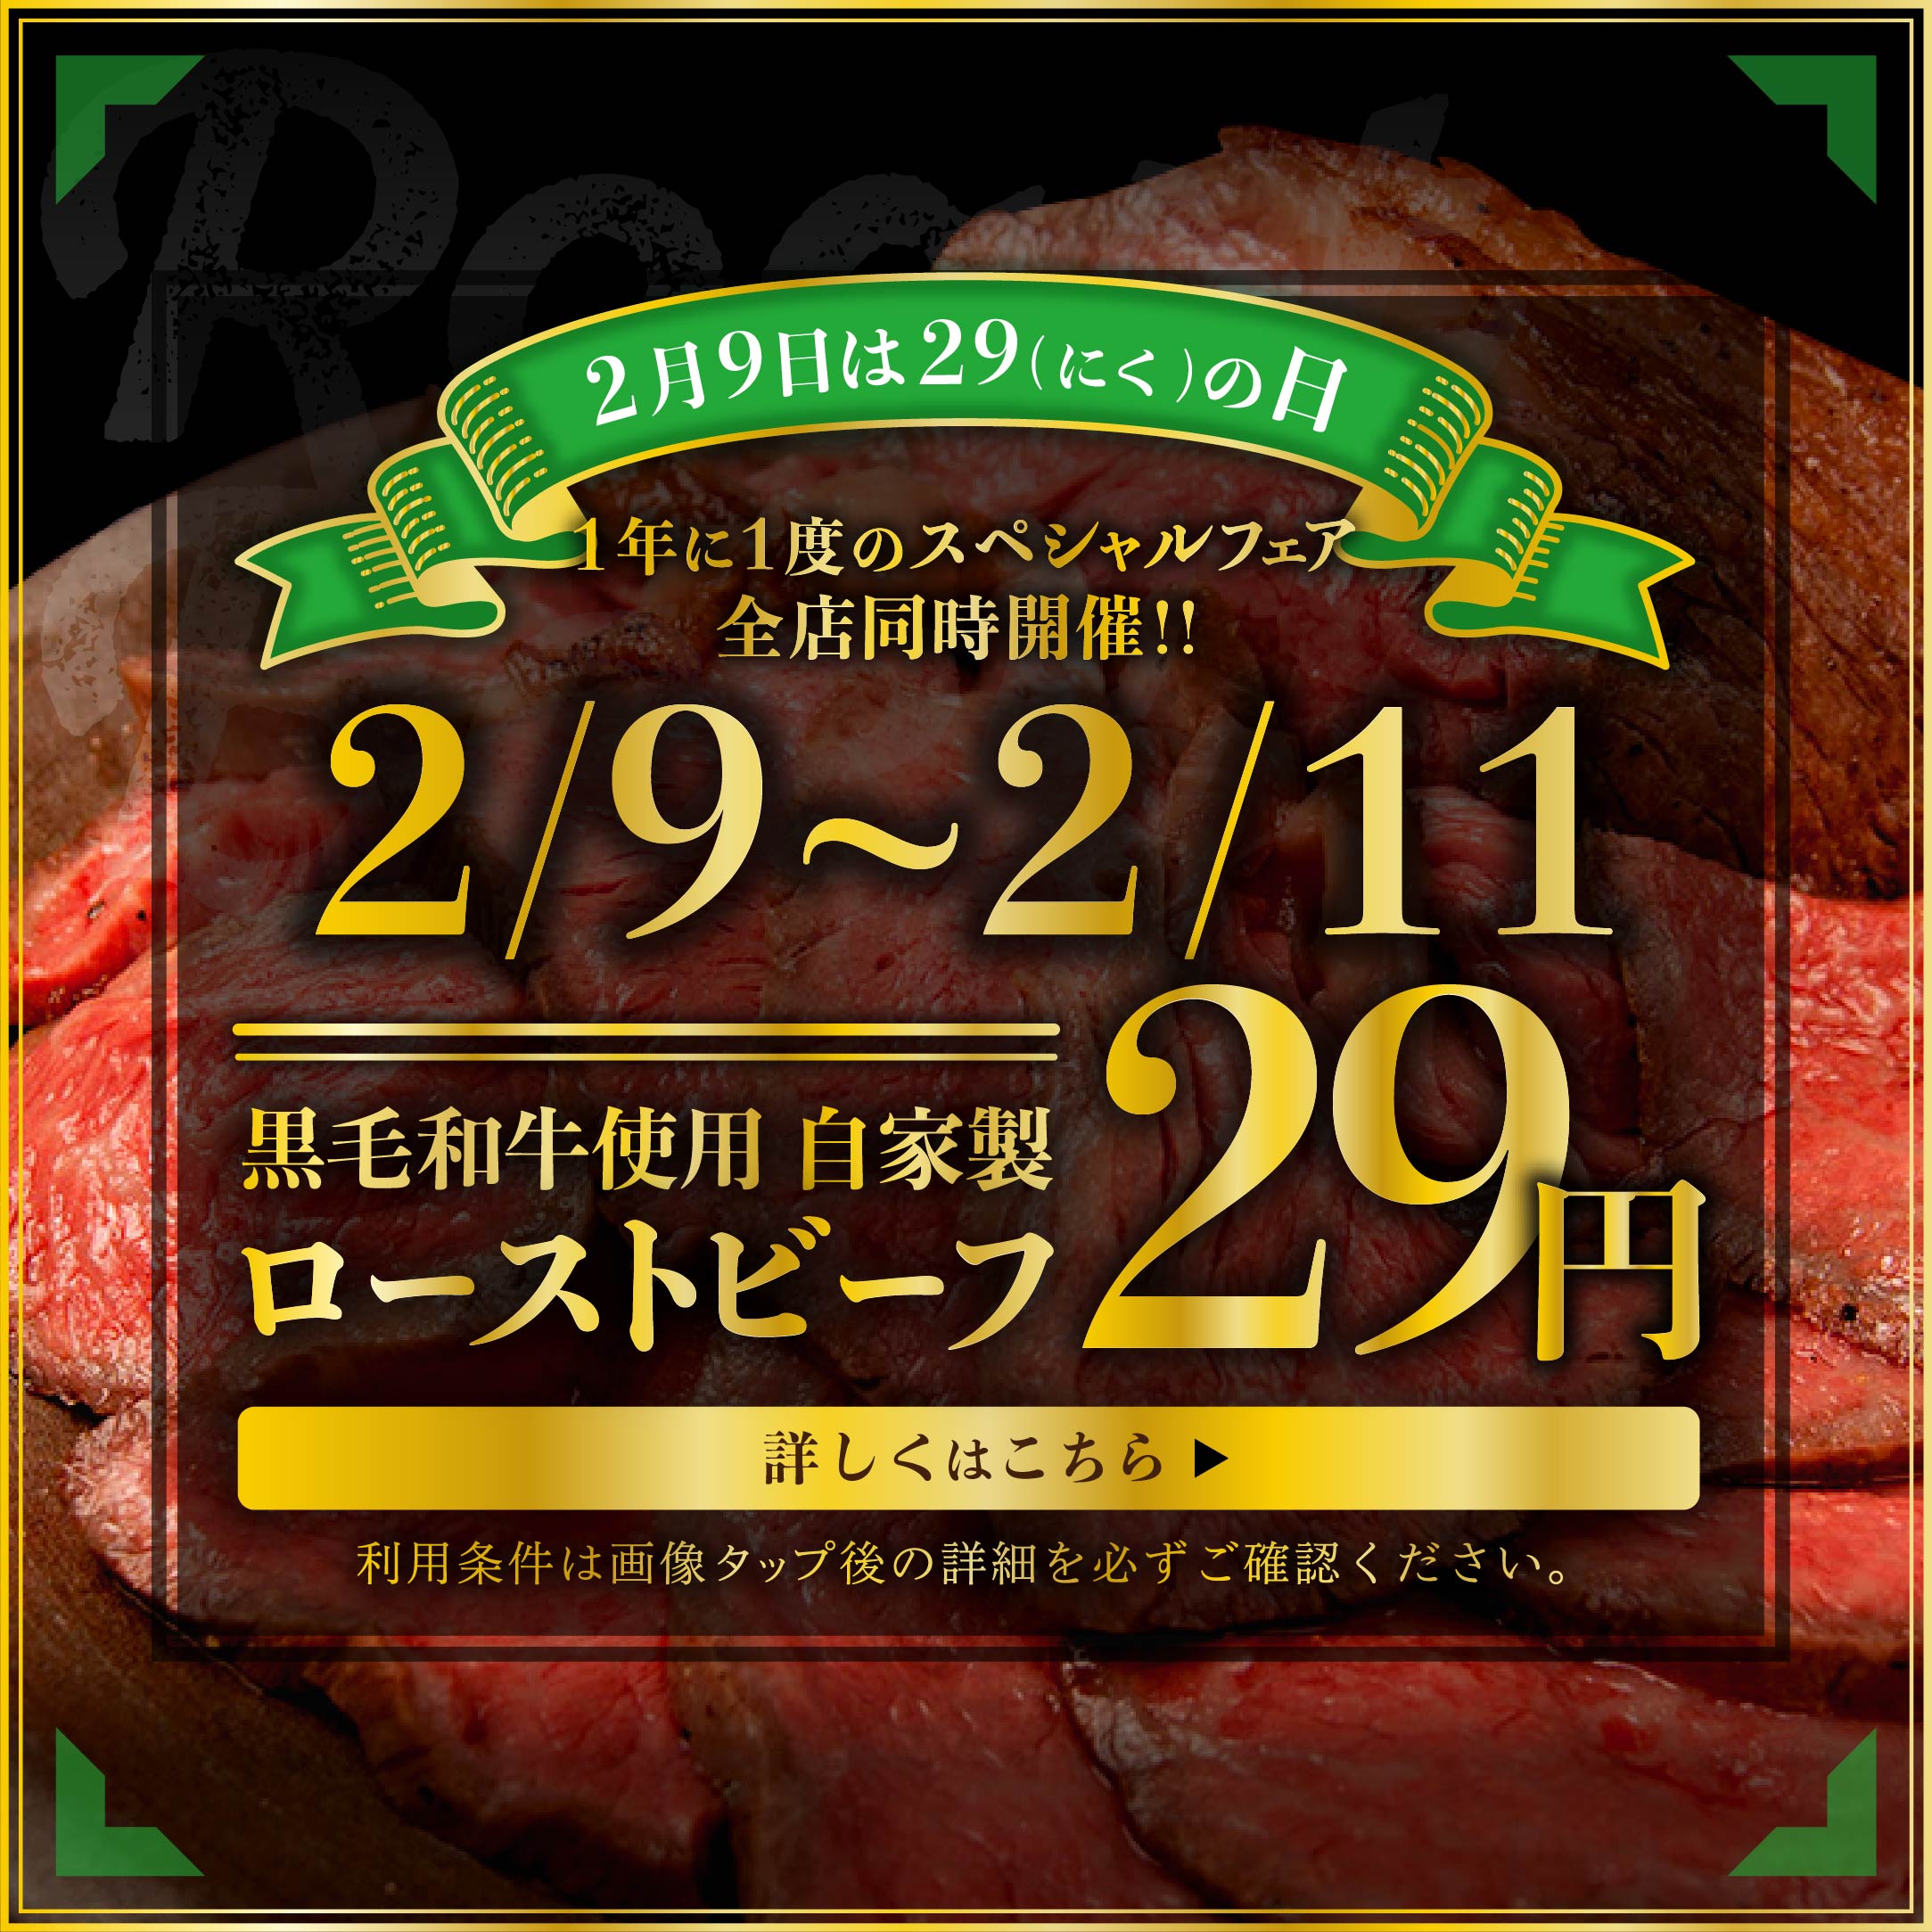 「2月9日は"肉(29)"の日!黒毛和牛ローストビーフが29円 ...